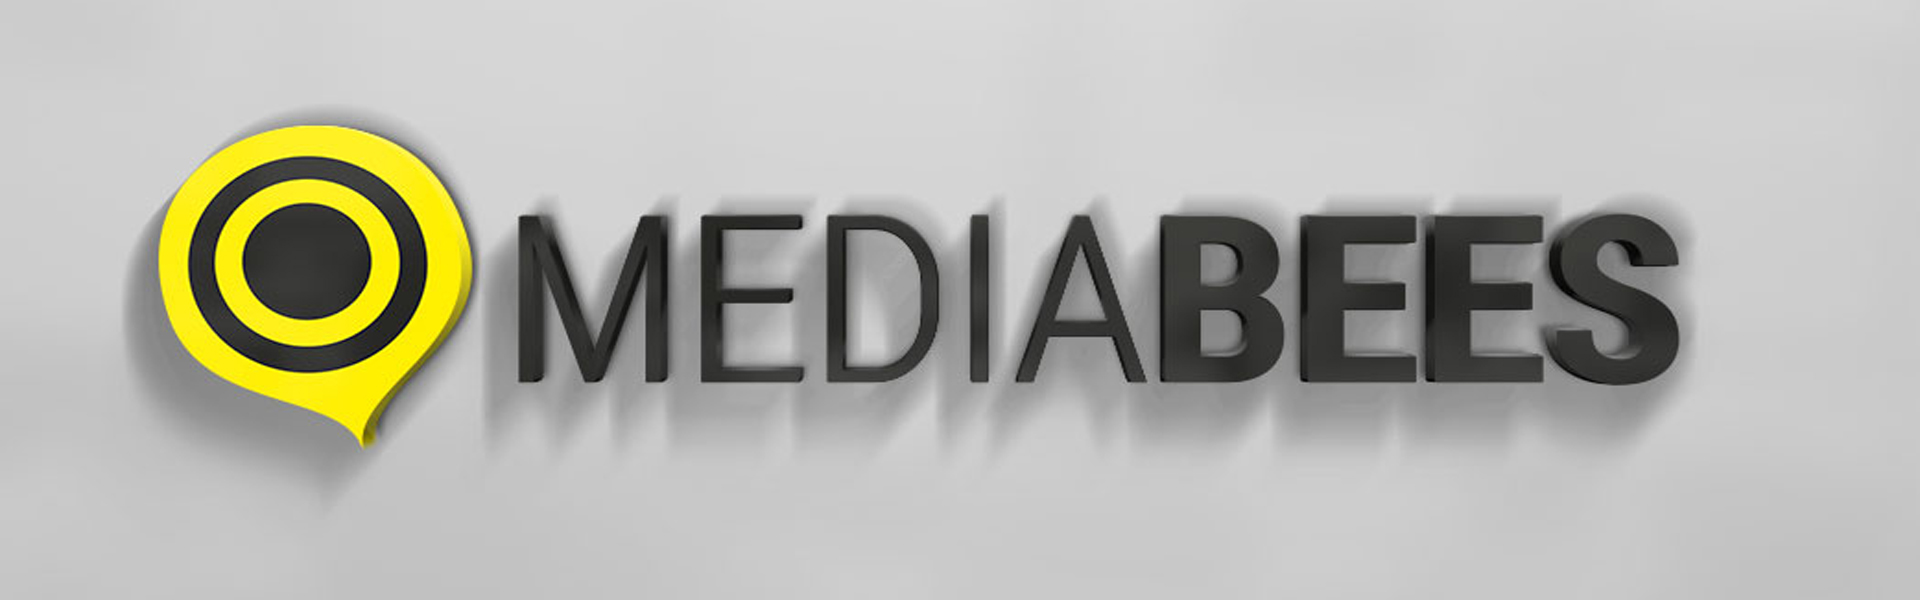 slider_mediabees